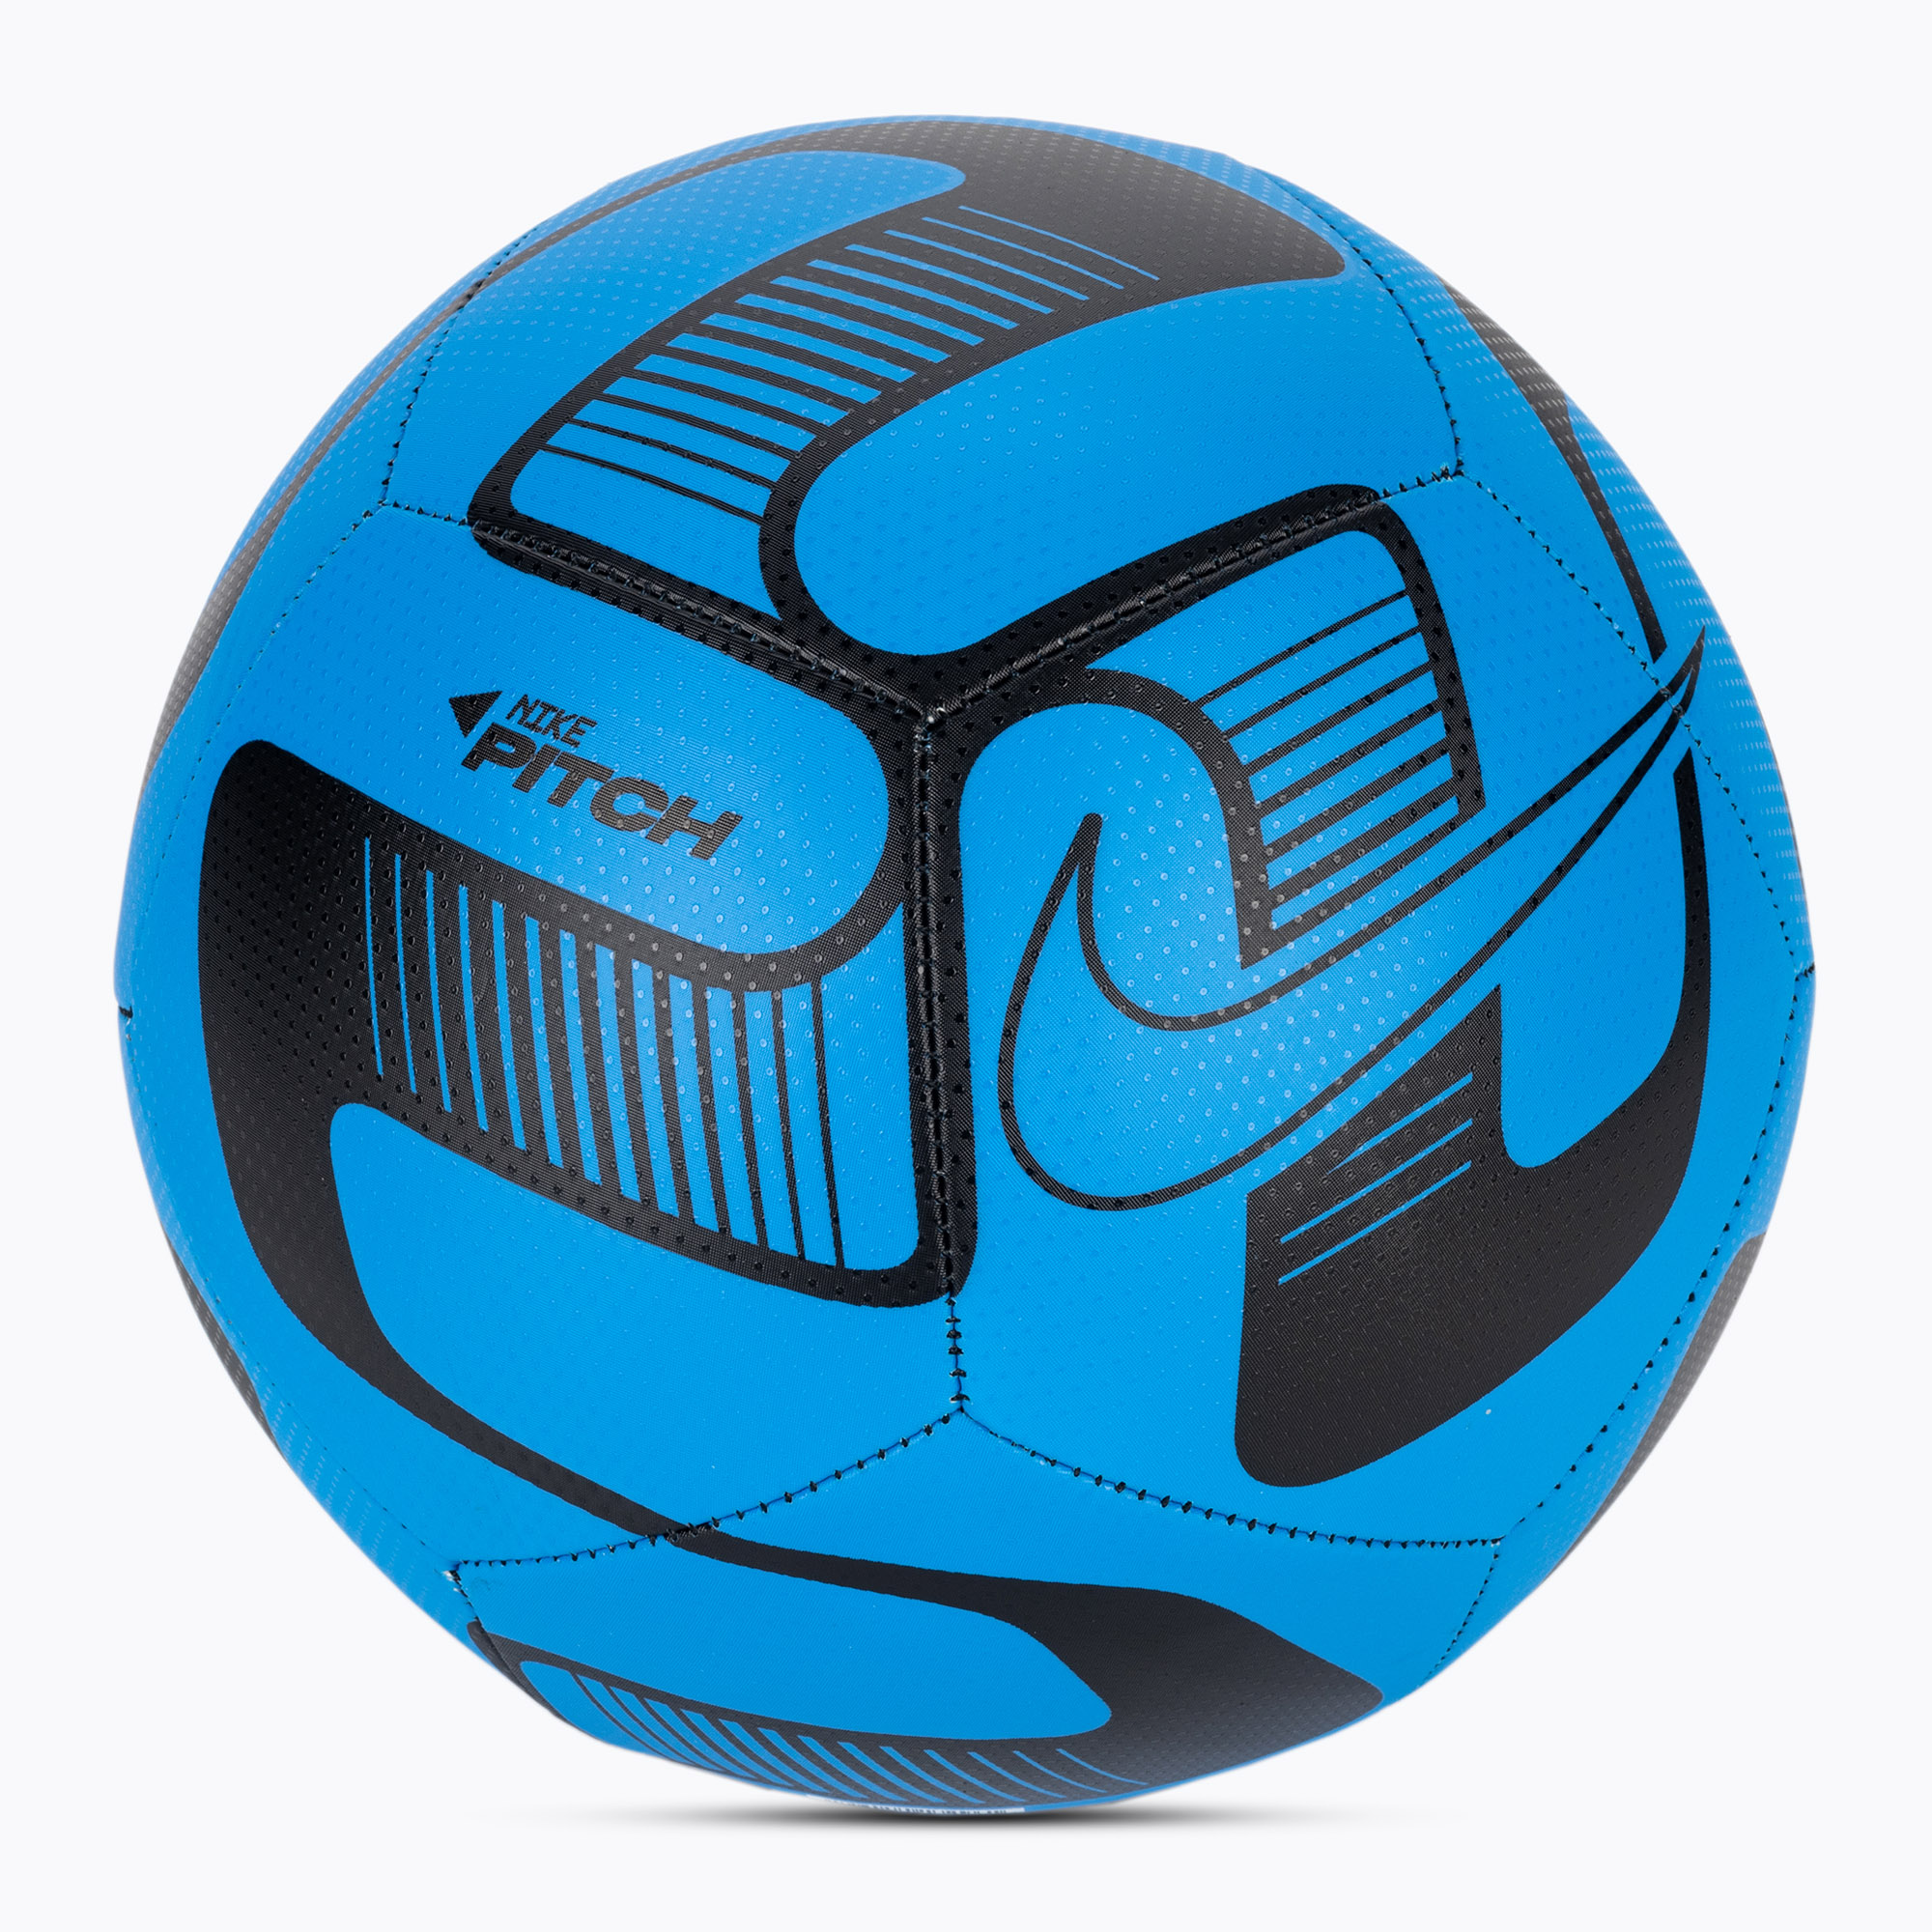 Futbalová lopta Nike Pitch futbal foto modrá/foto modrá/čierna veľkosť 5